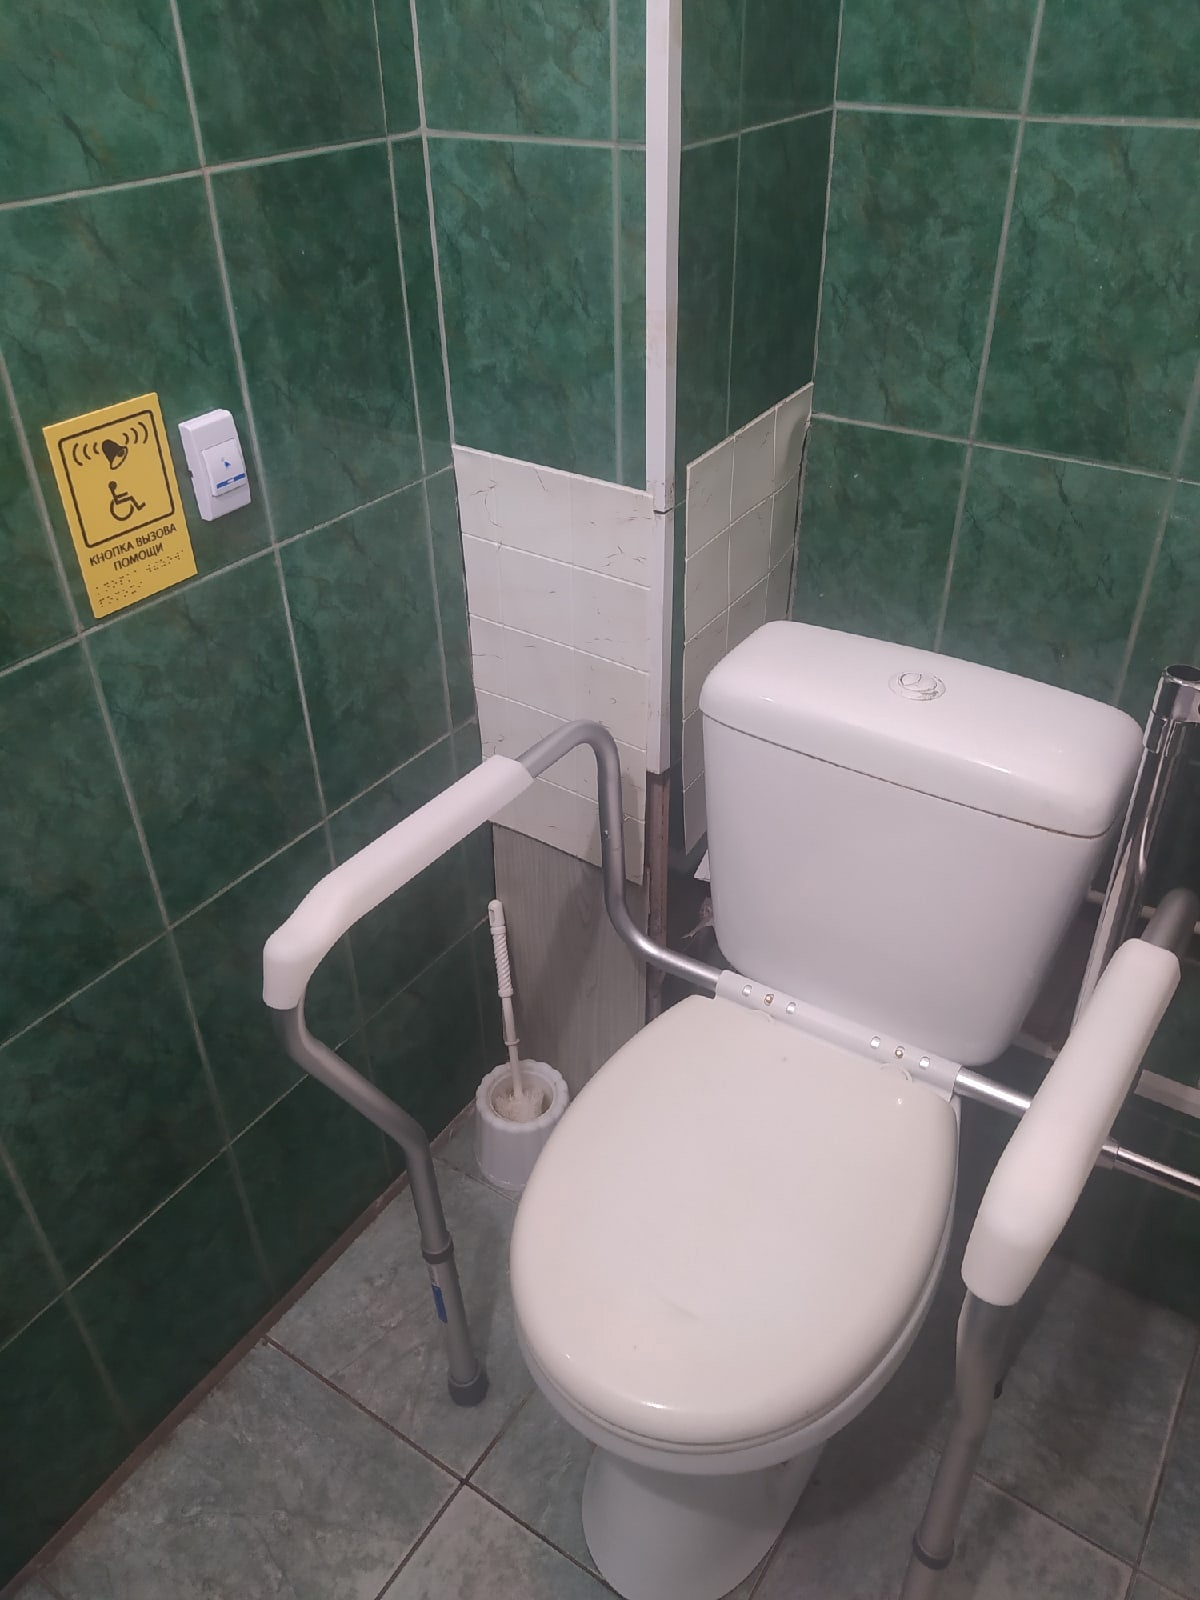 Специальная женская туалетная комната с поручнями и кнопкой вызова помощи со шрифтом Брайля  для инвалидов